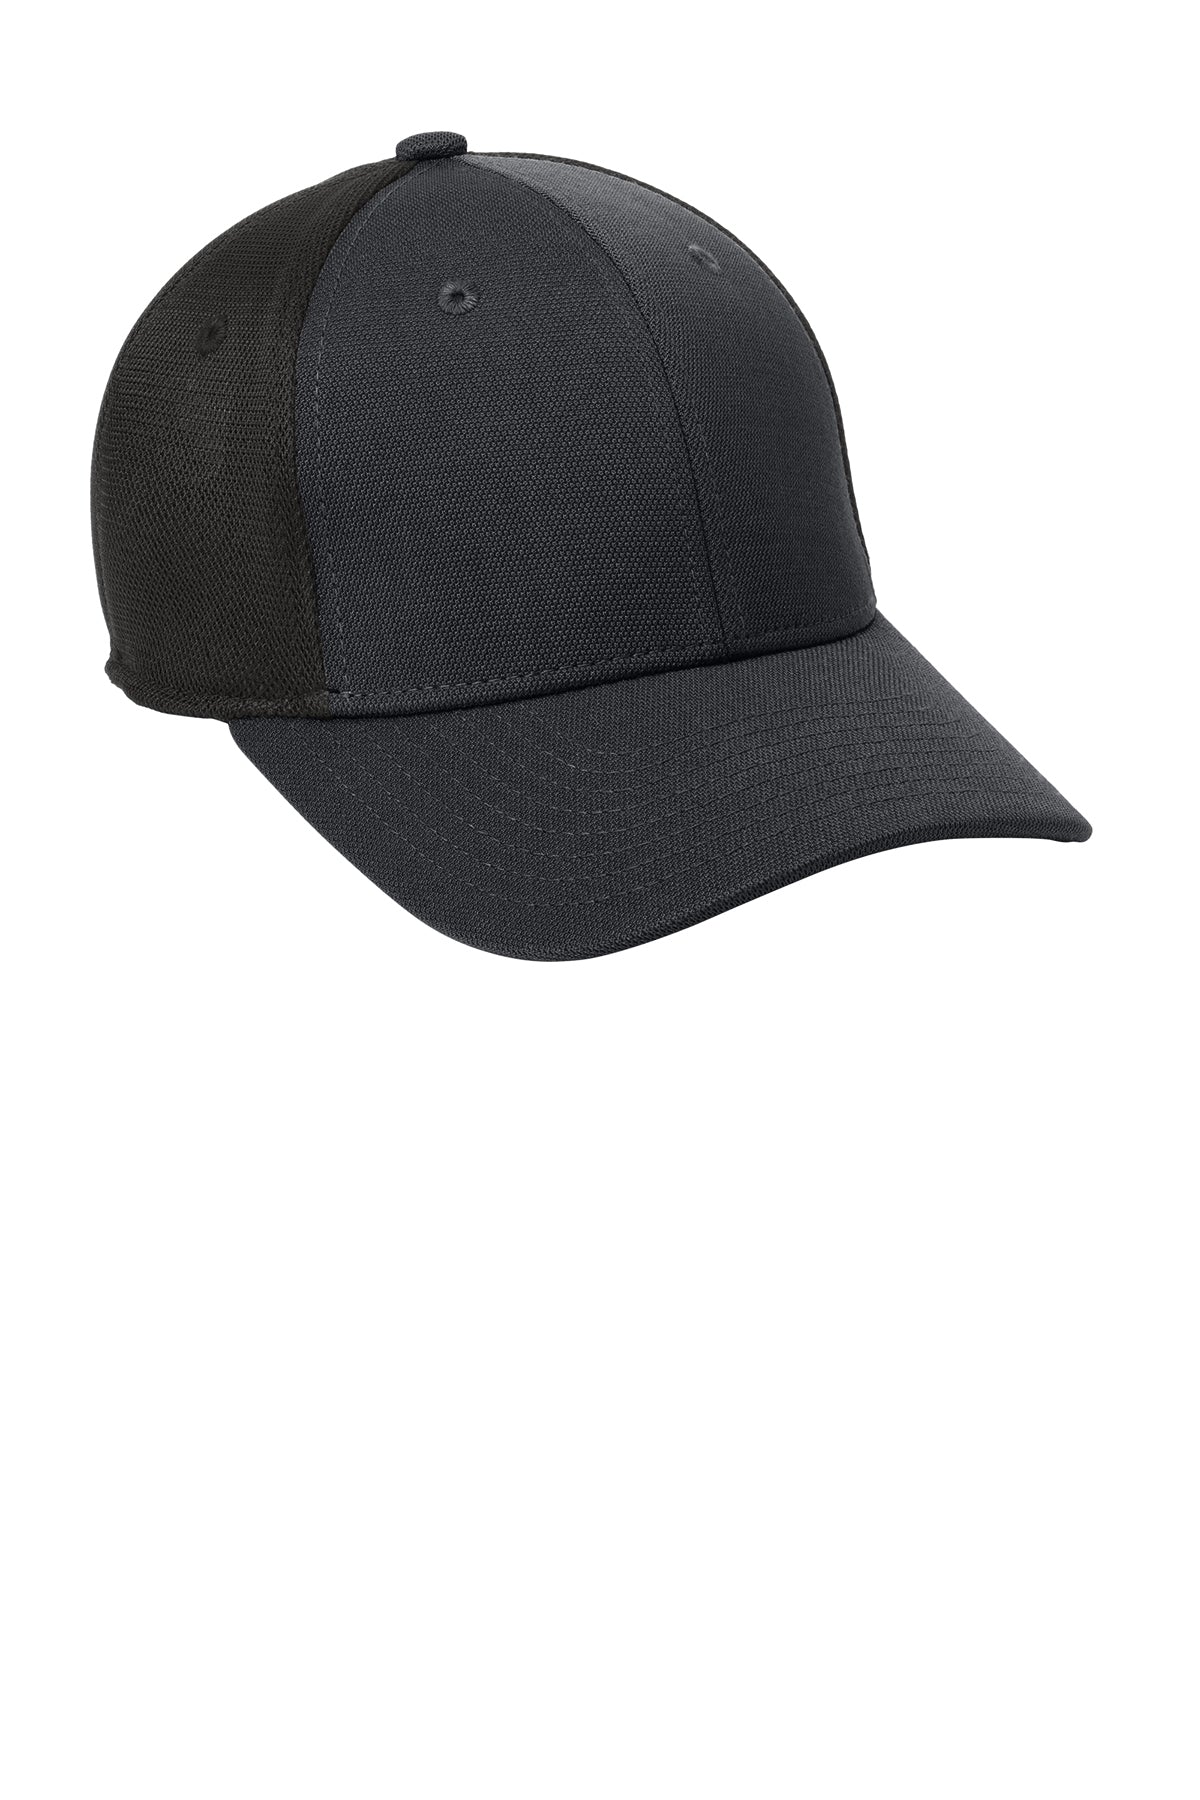 Port Authority Pique Mesh Customized Caps, Black/ Black